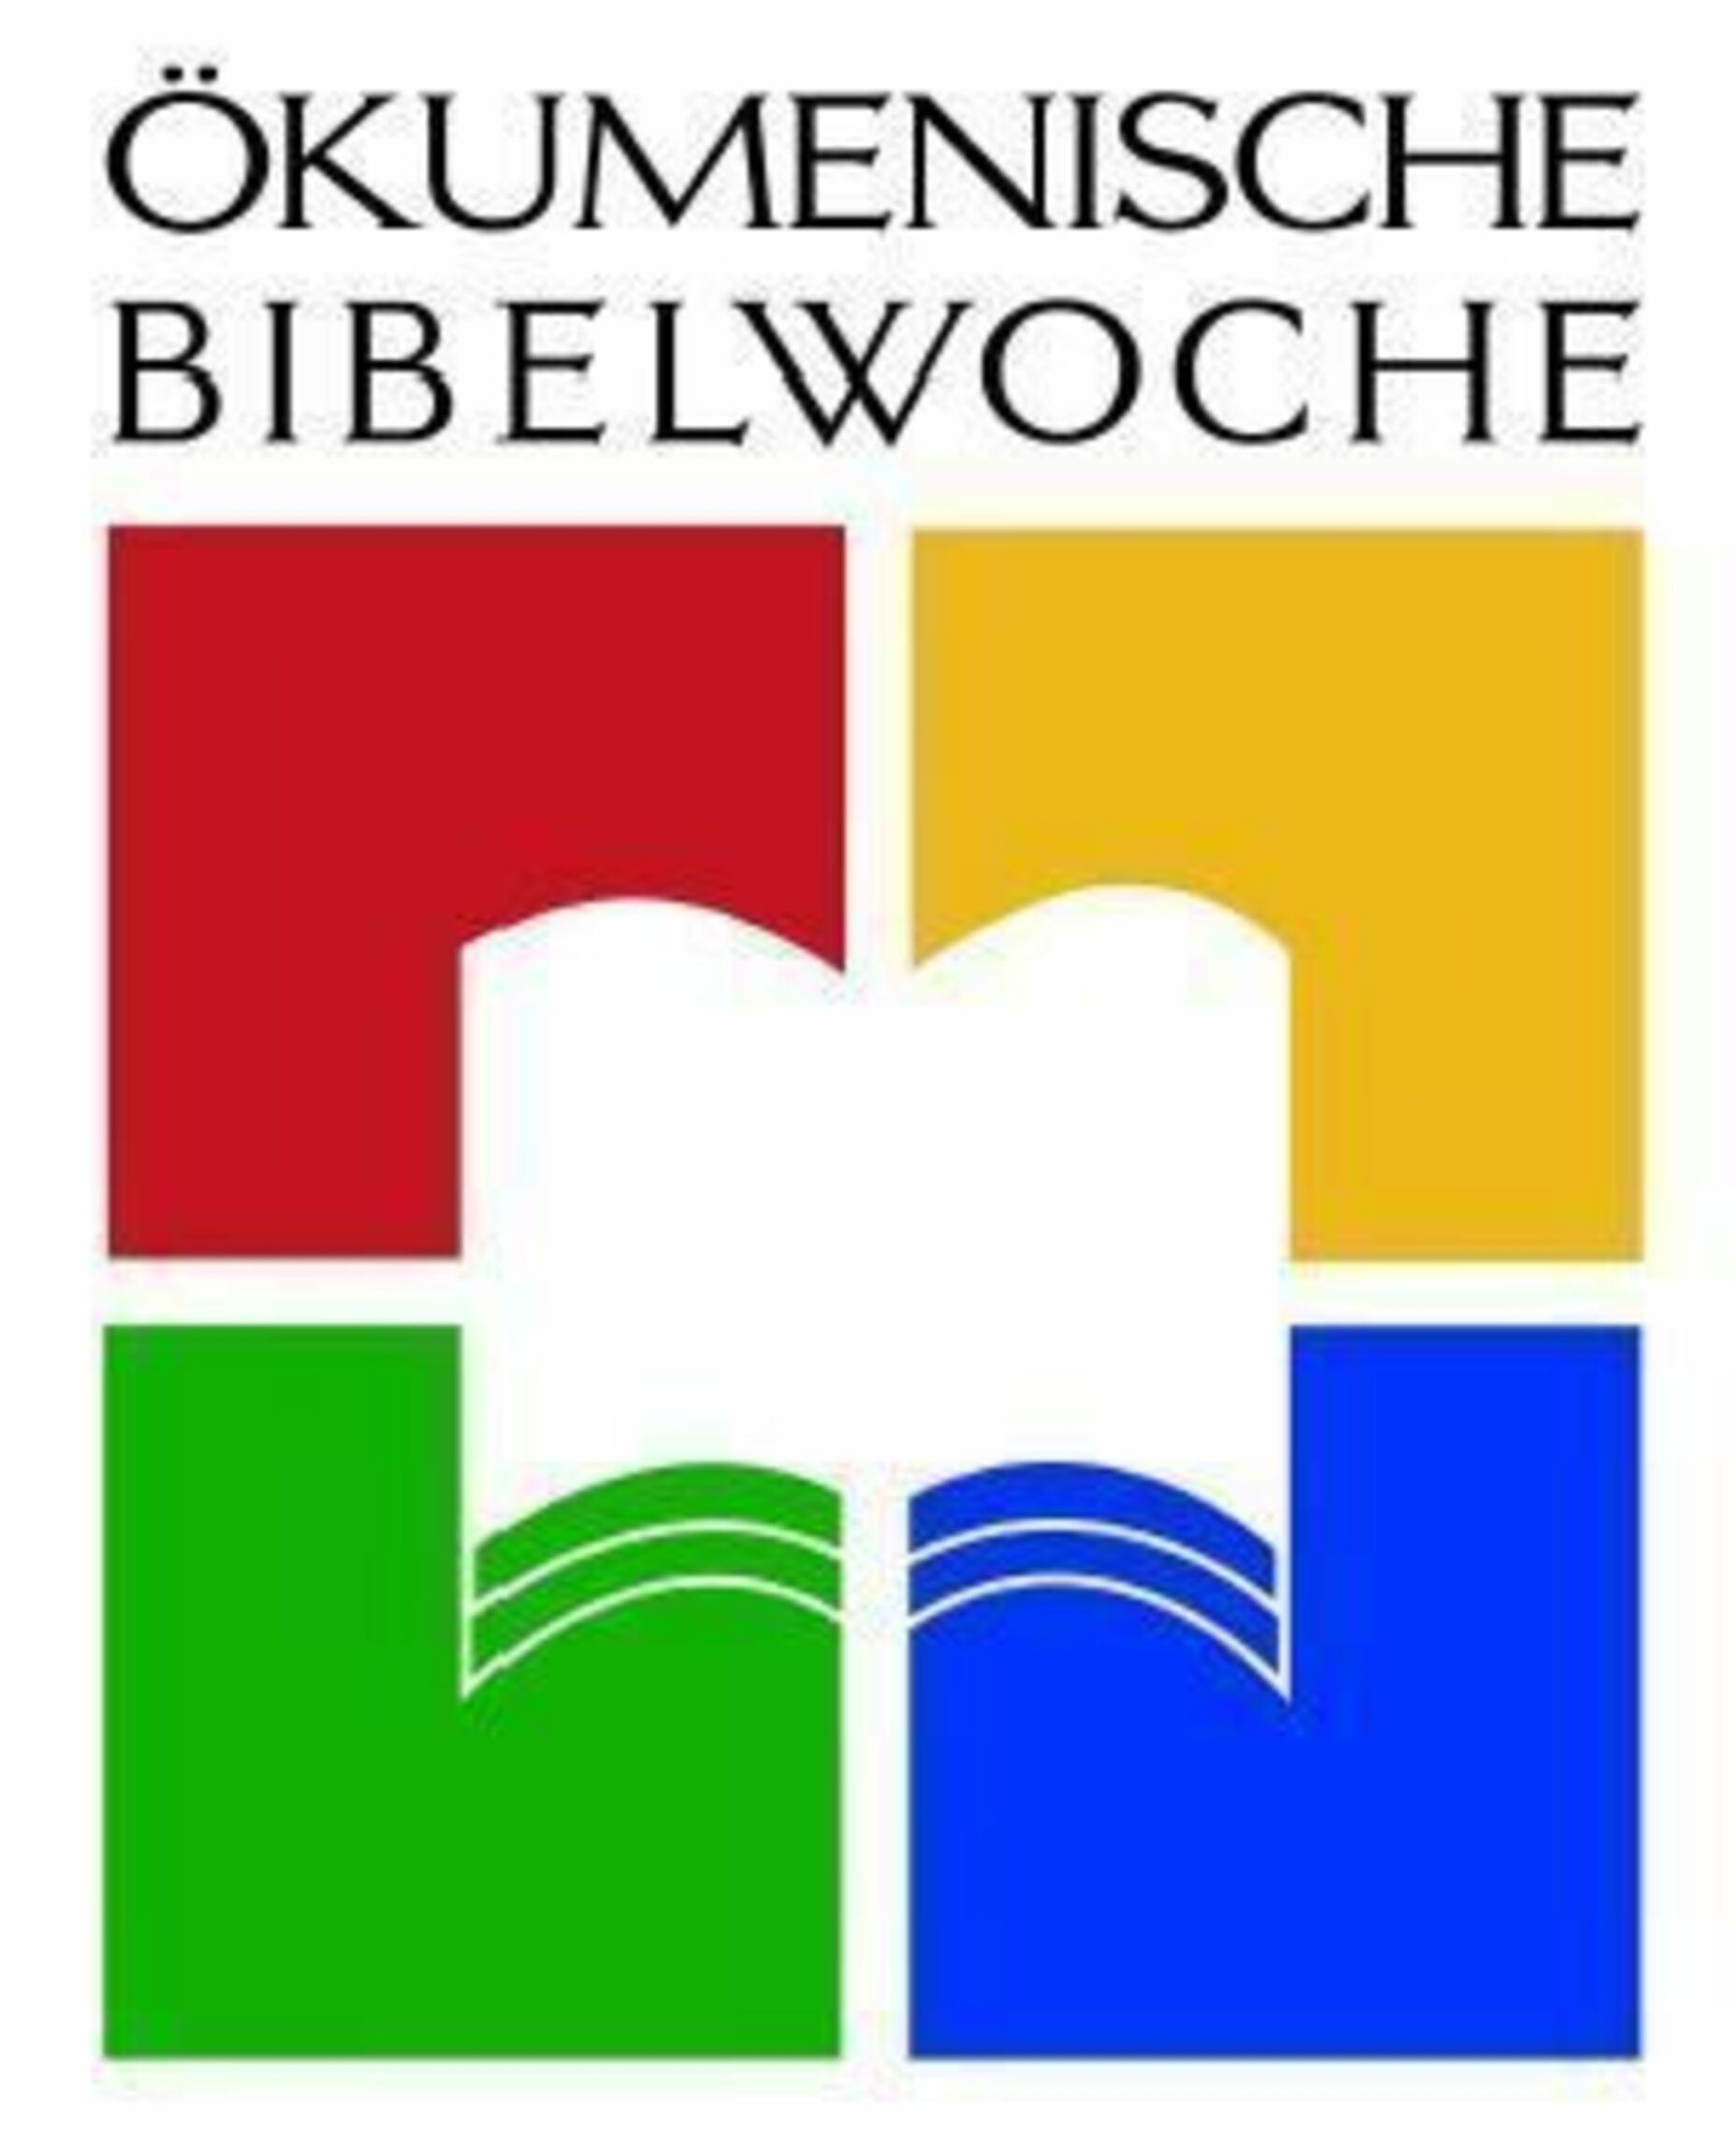 bibelwoche_farbig